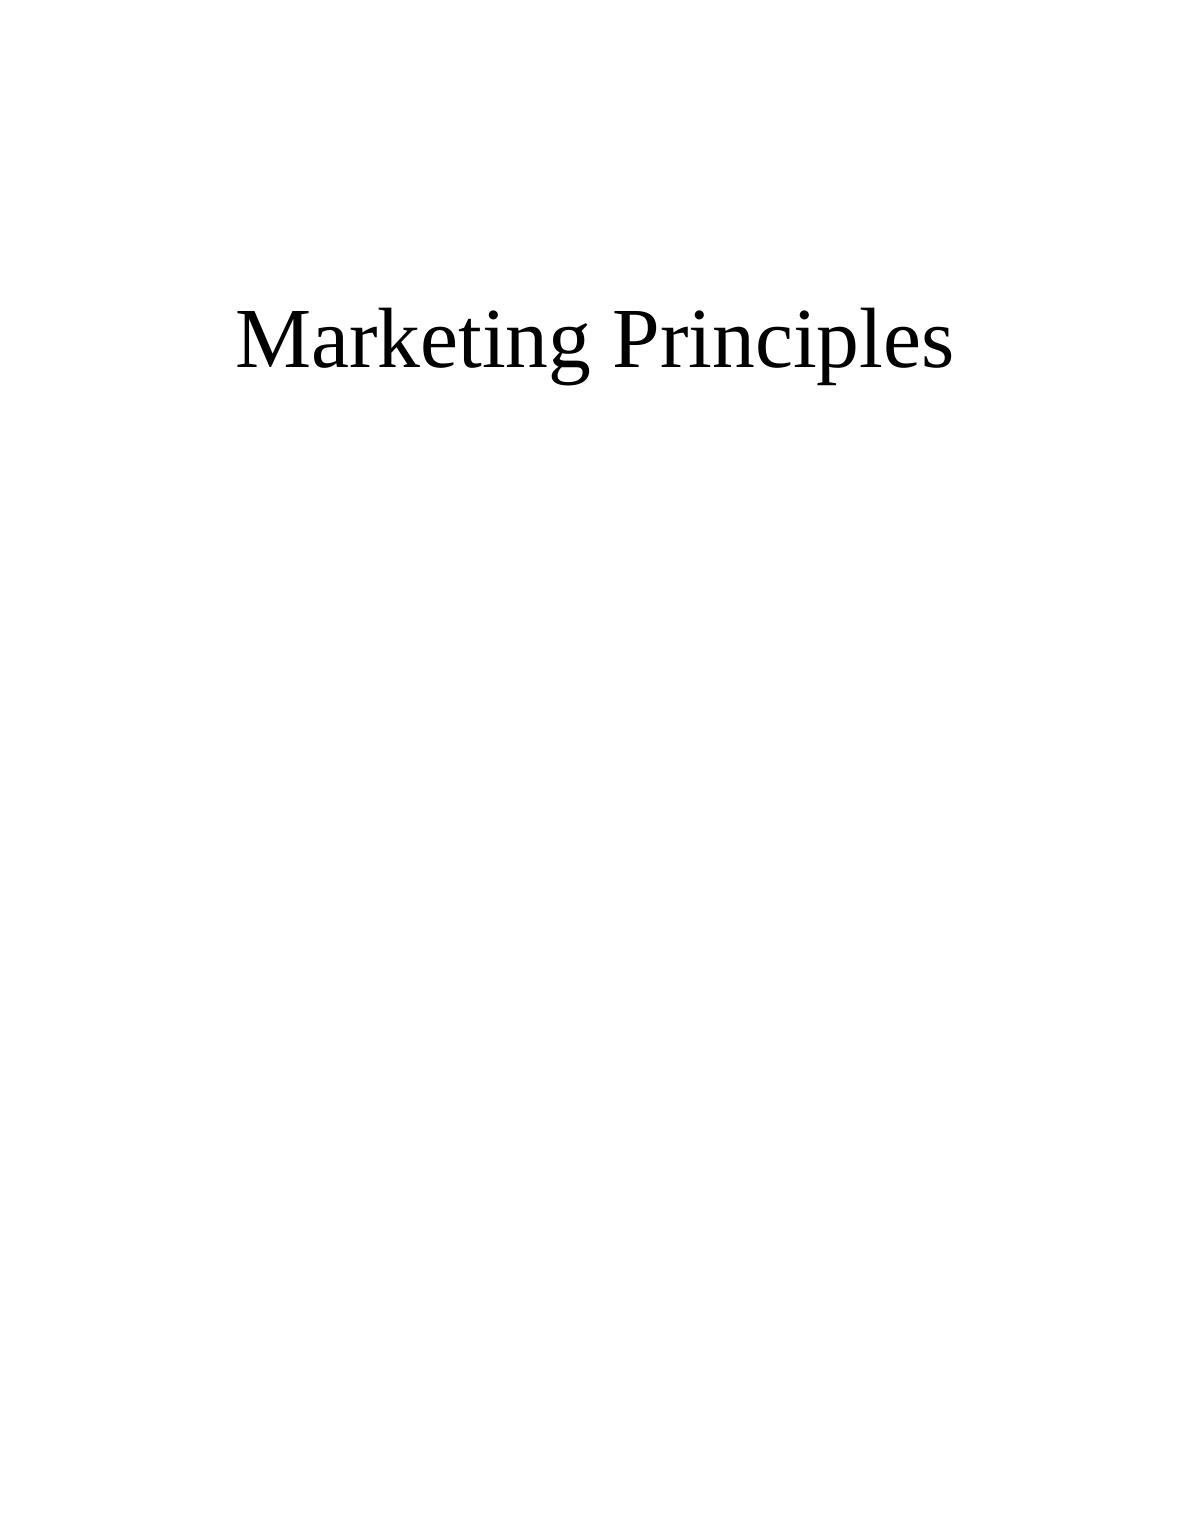 Marketing Principles of Marks & Spencer_1